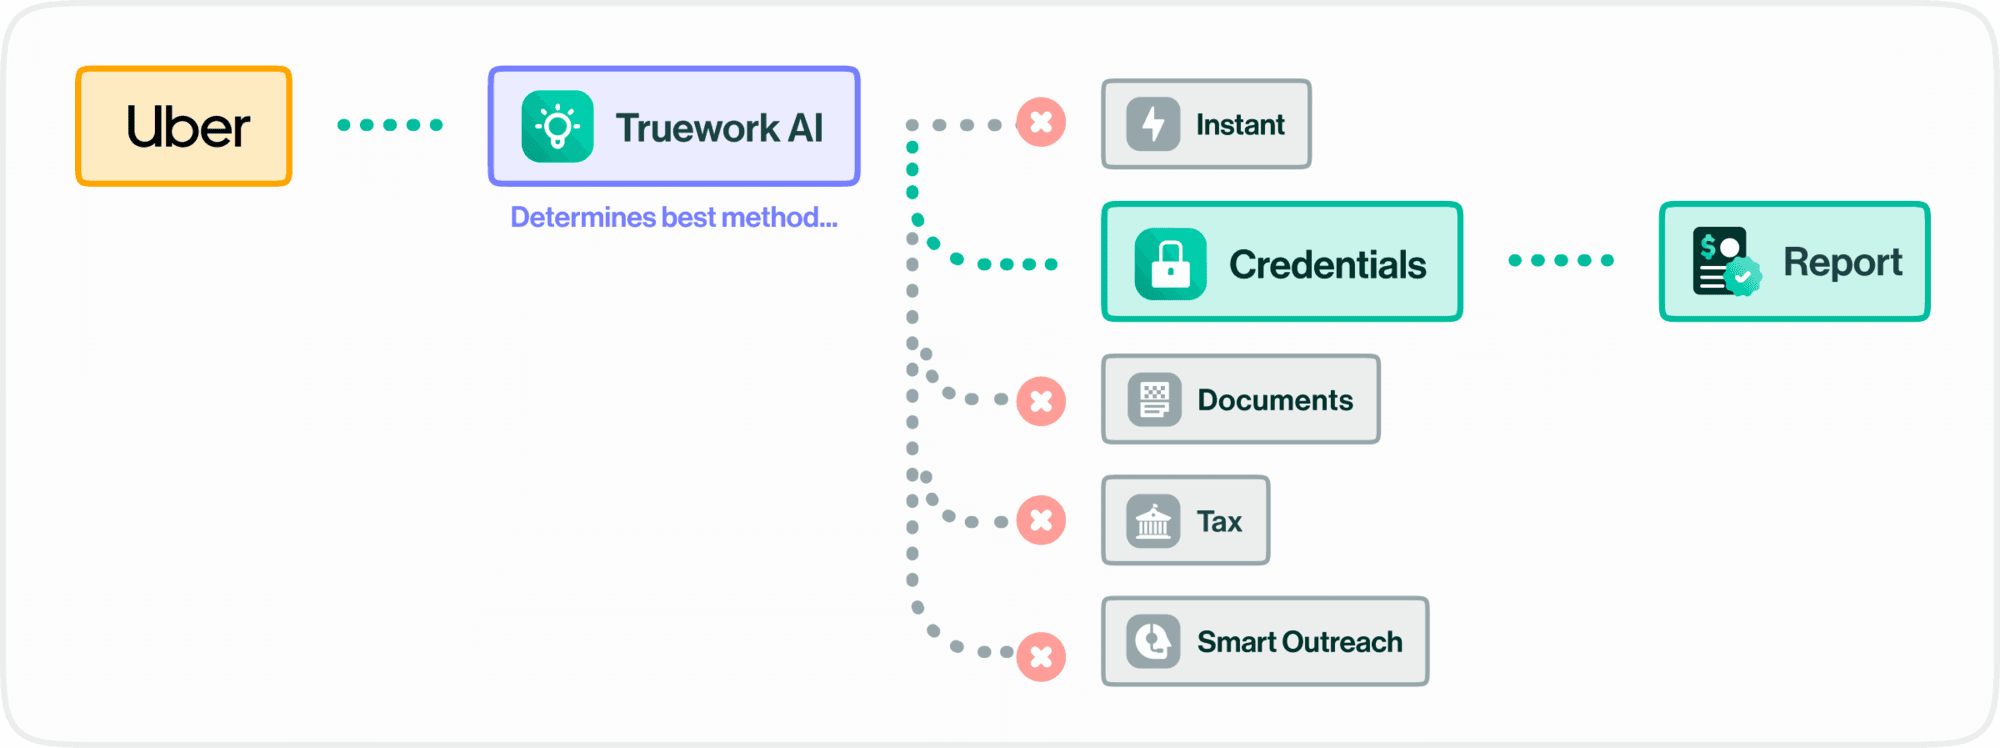 Truework AI optimizes verification routing